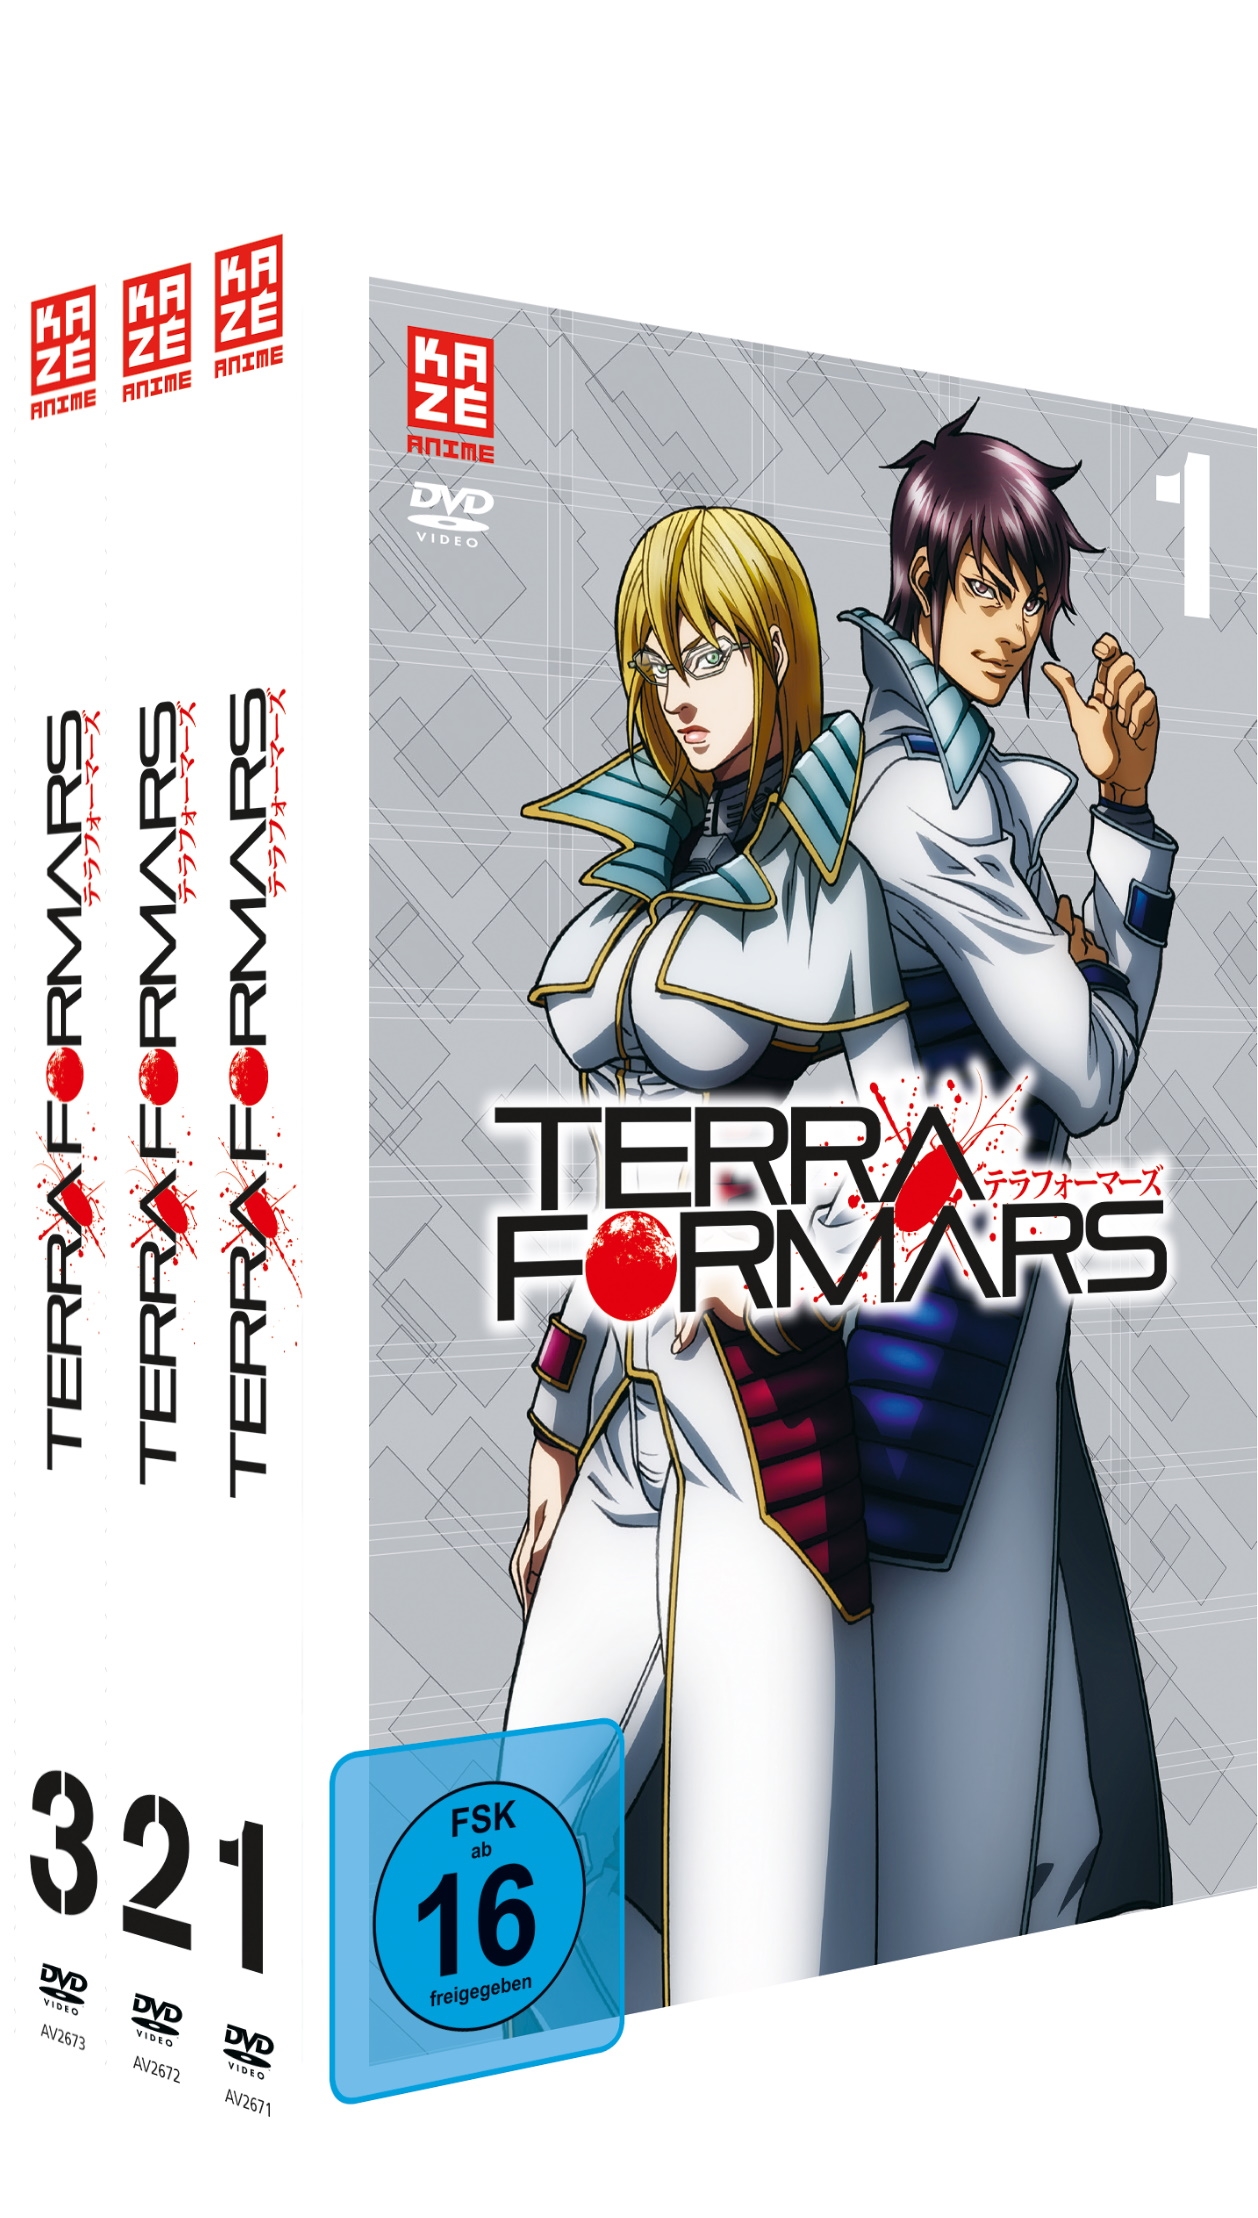 Terraformars - Gesamtausgabe - Bundle Vol.1-3 - DVD